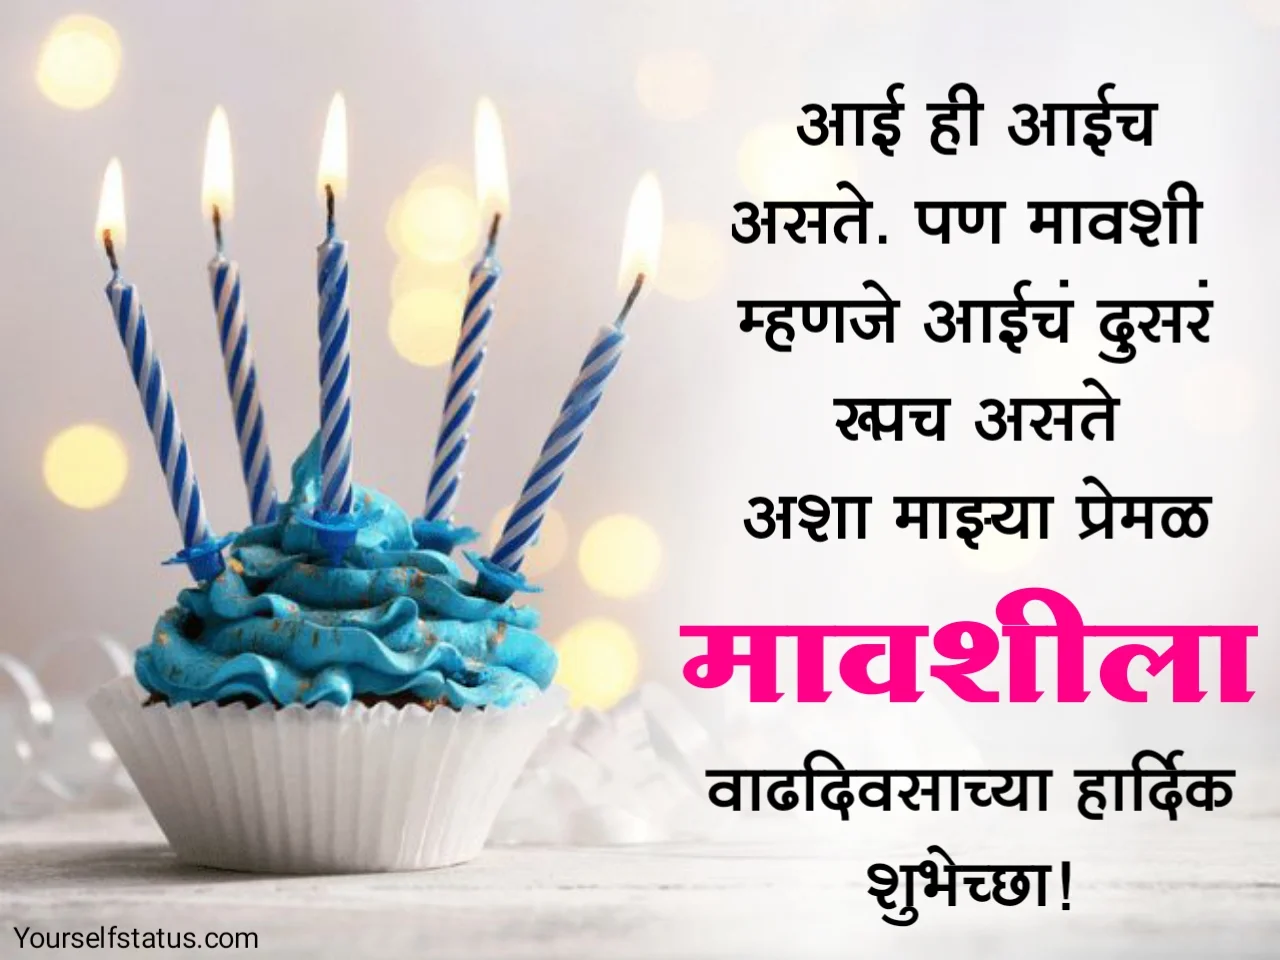 Happy Birthday wishes for mavshi in marathi